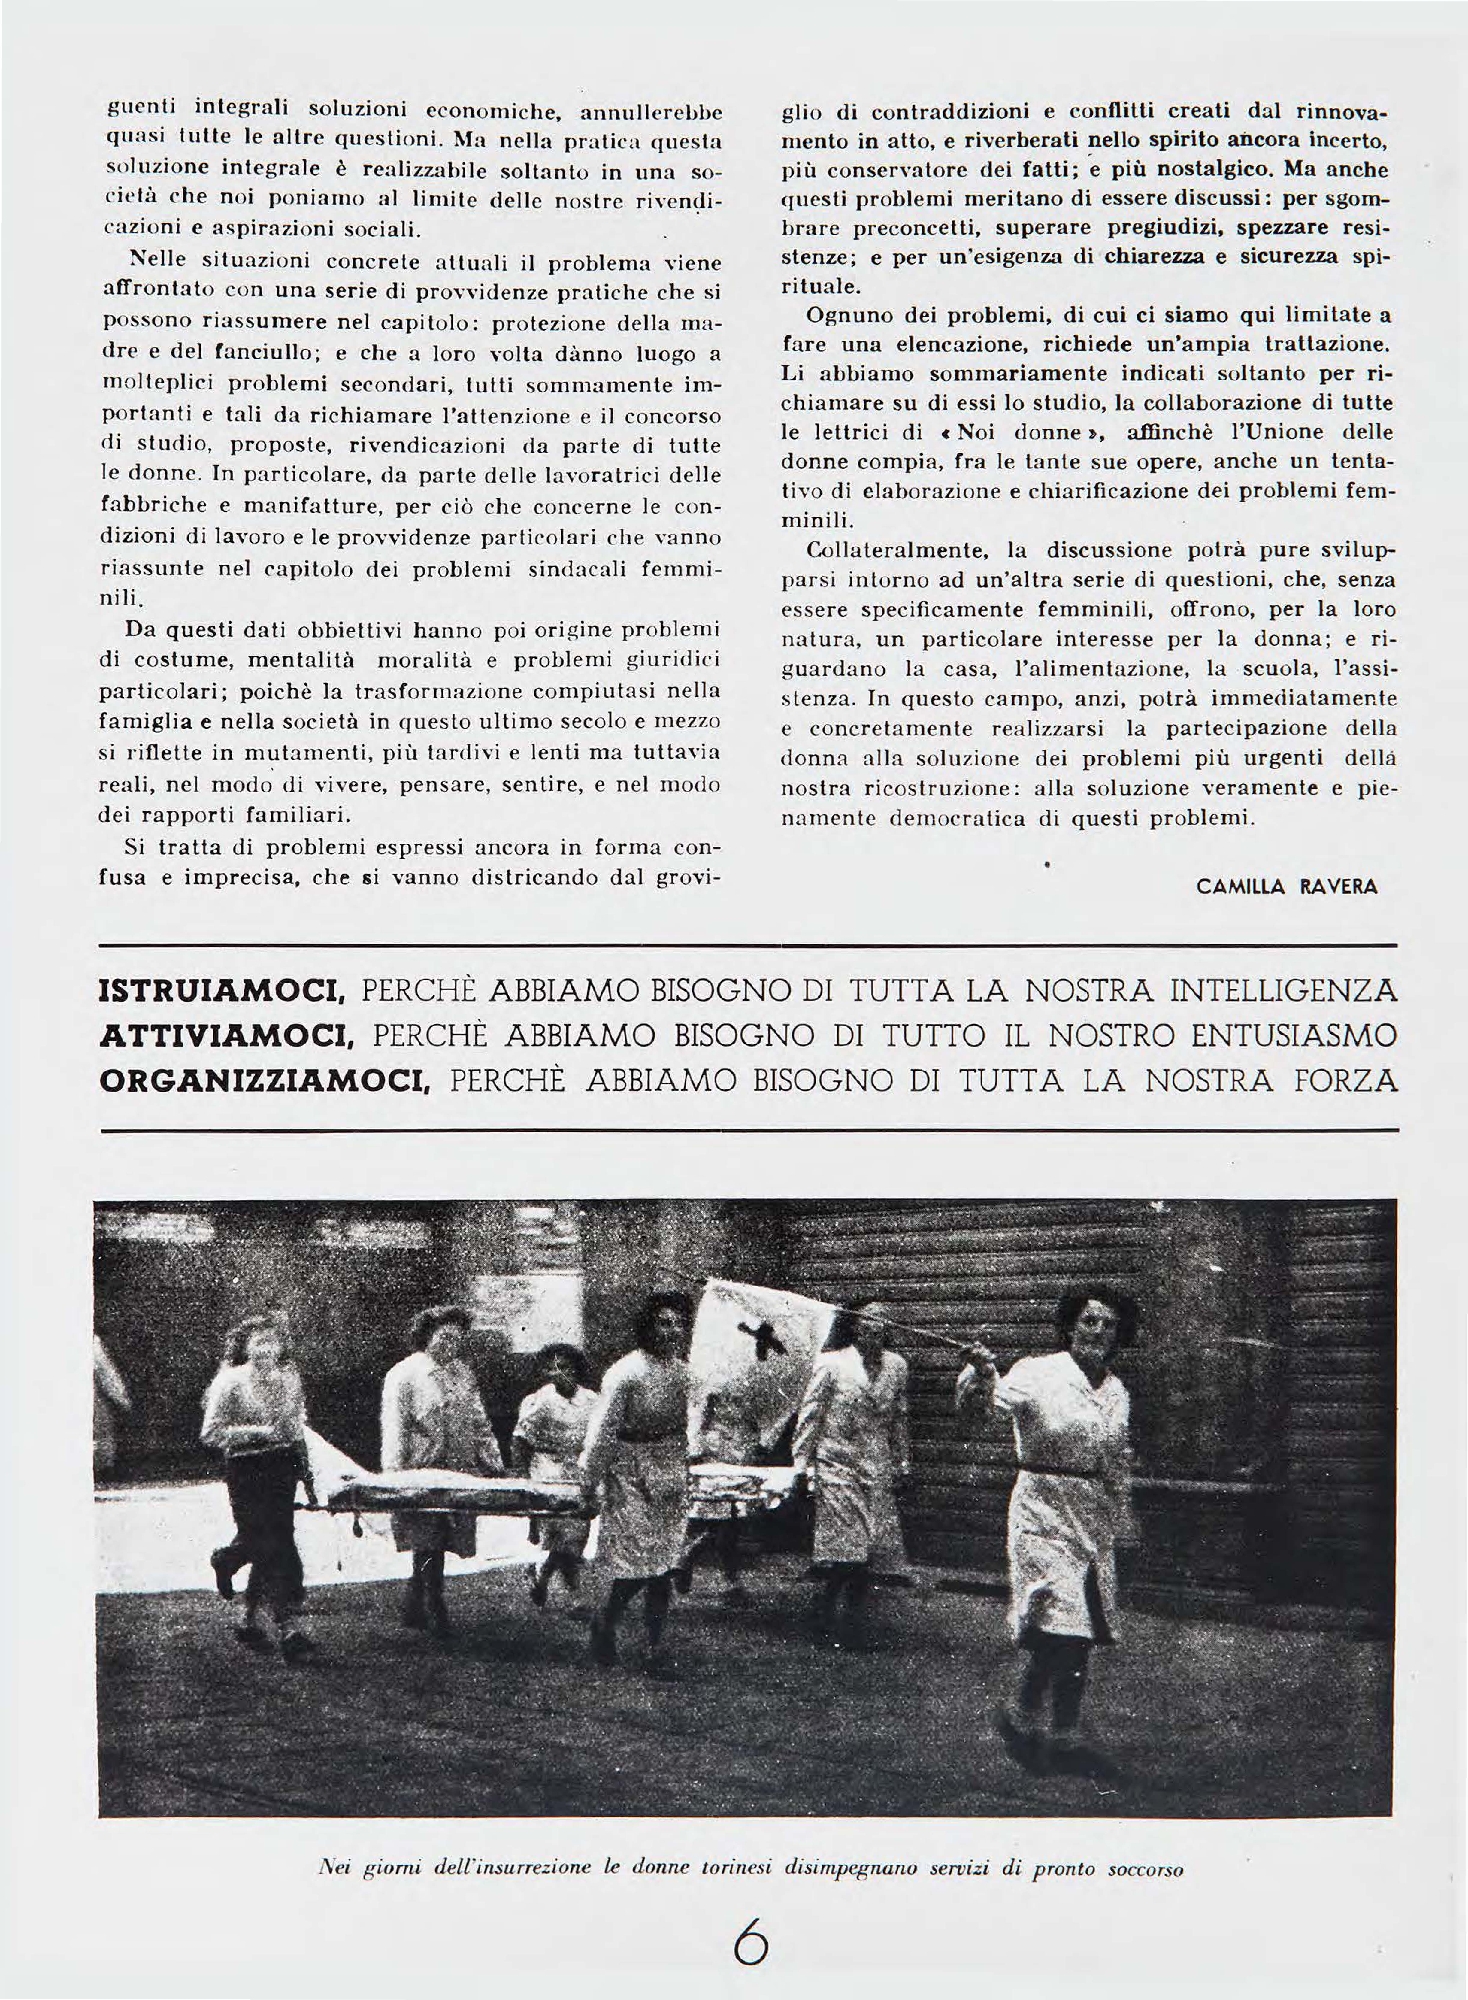 Foto: Piemonte, primo numero ufficiale